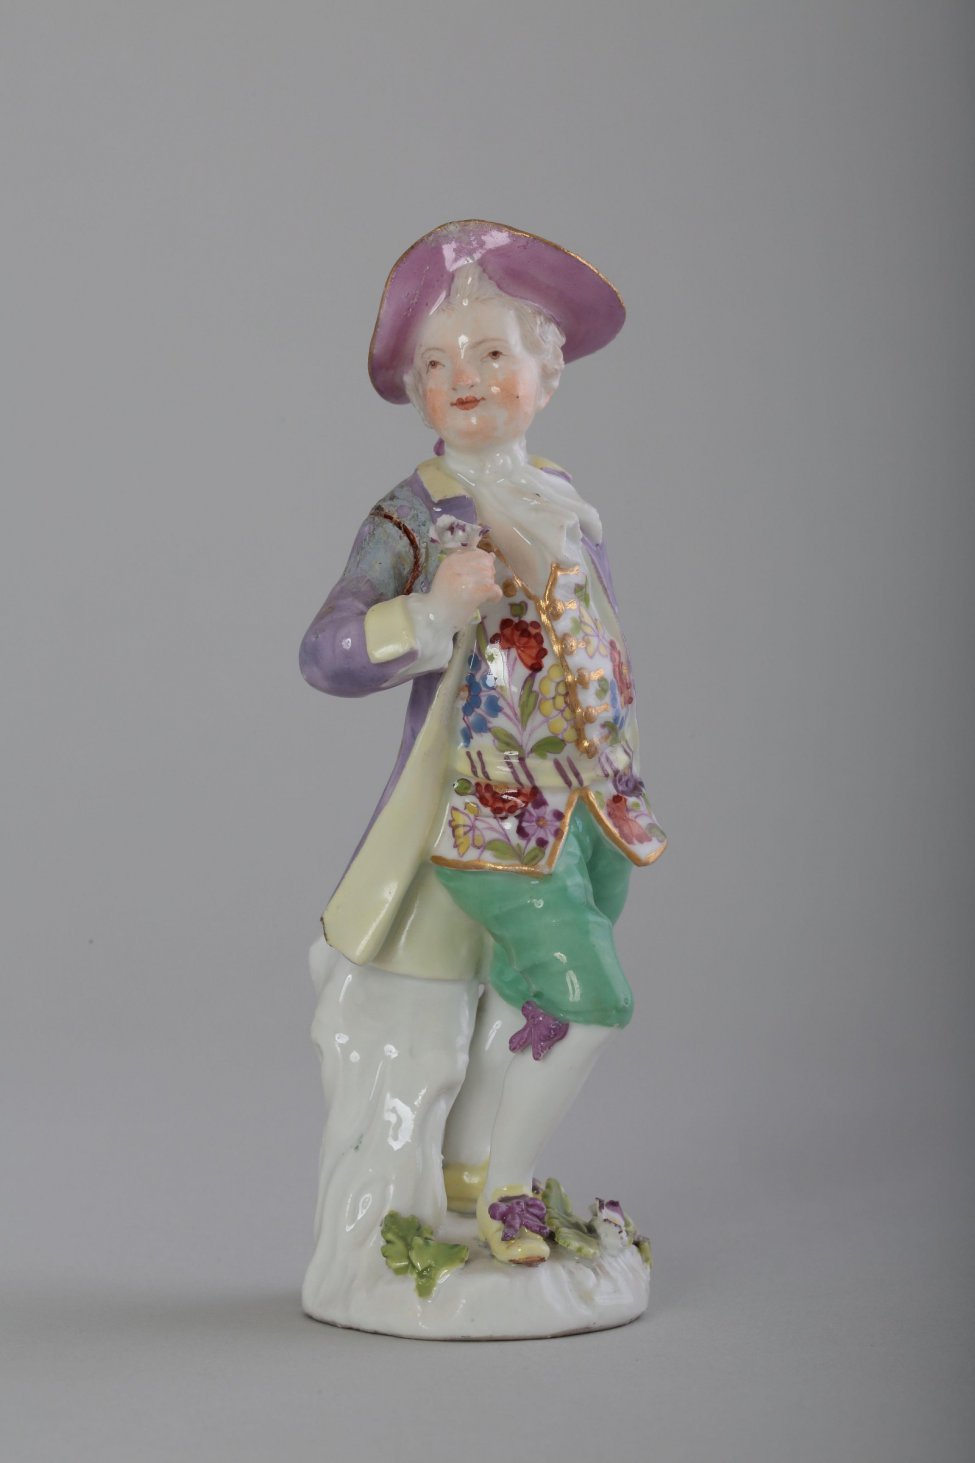 Фигура мужчины (маркиза?) в костюме XVIII века. Одет мужчина в сиреневый камзол, зеленые панталоны до колен, на голове - сиреневая шляпа. В правой руке держит цветок.